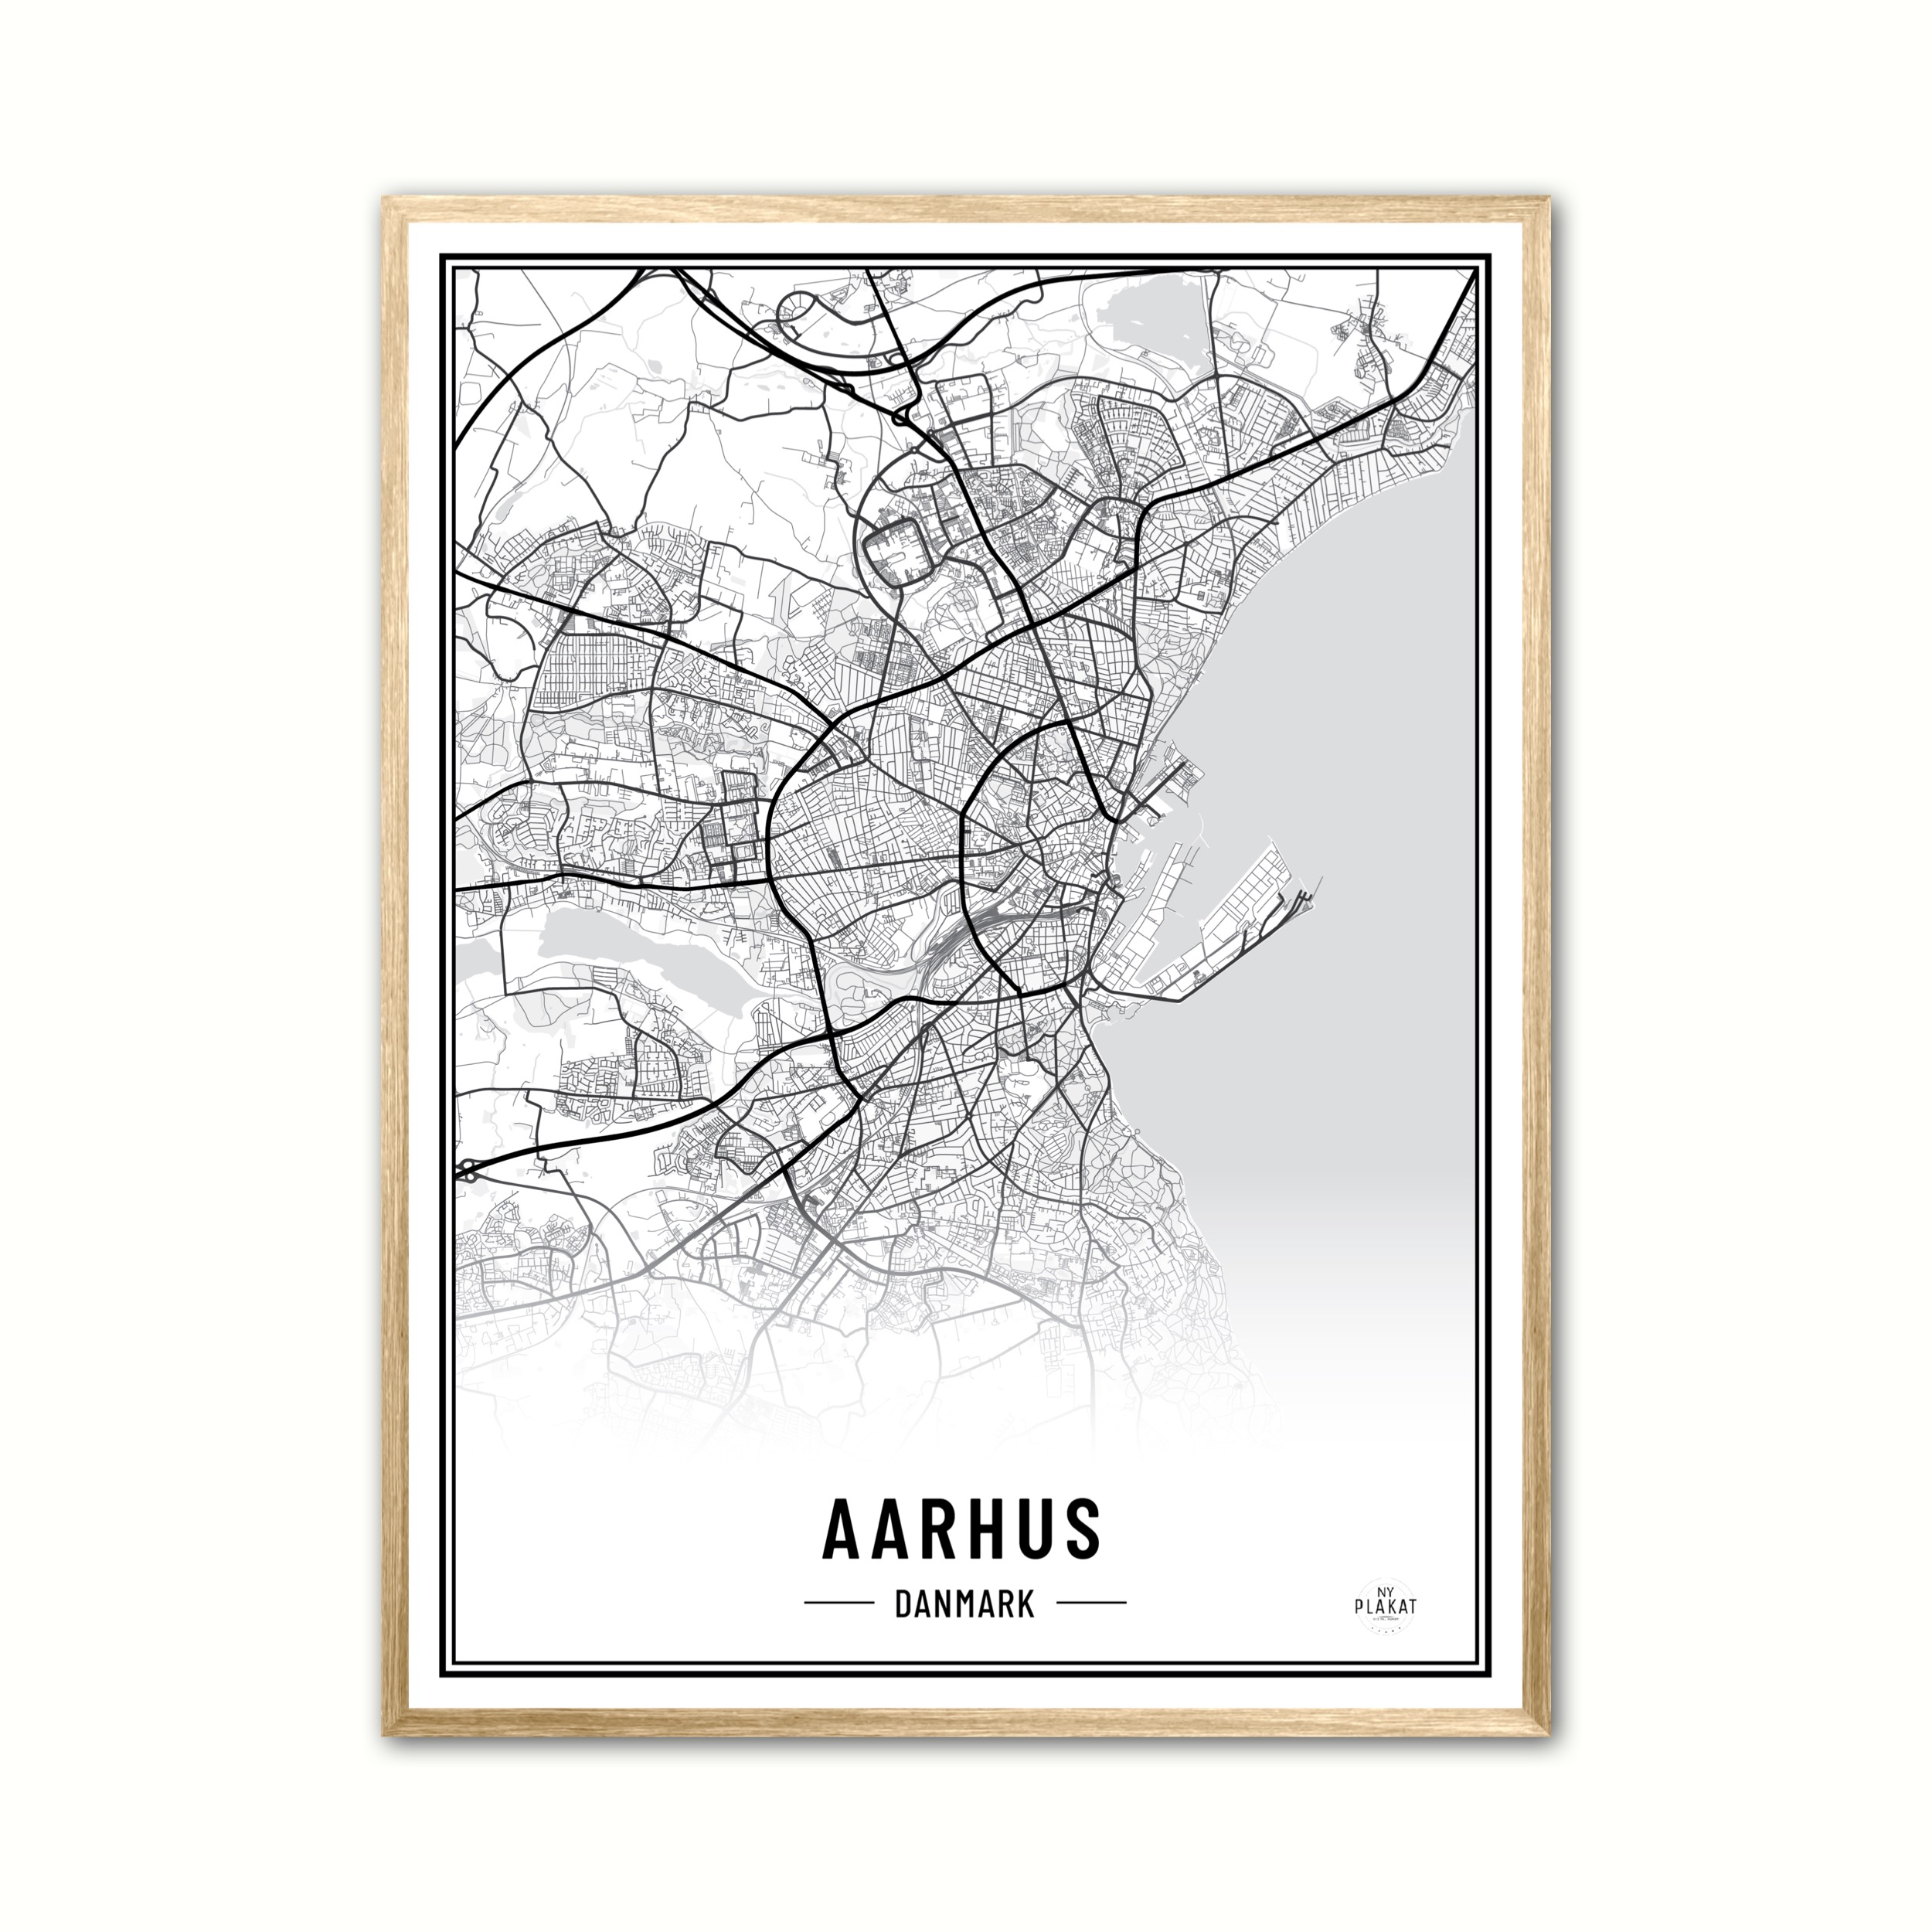 Se Plakat med Aarhus - Plakat 70 x 100 cm (B1) hos Nyplakat.dk